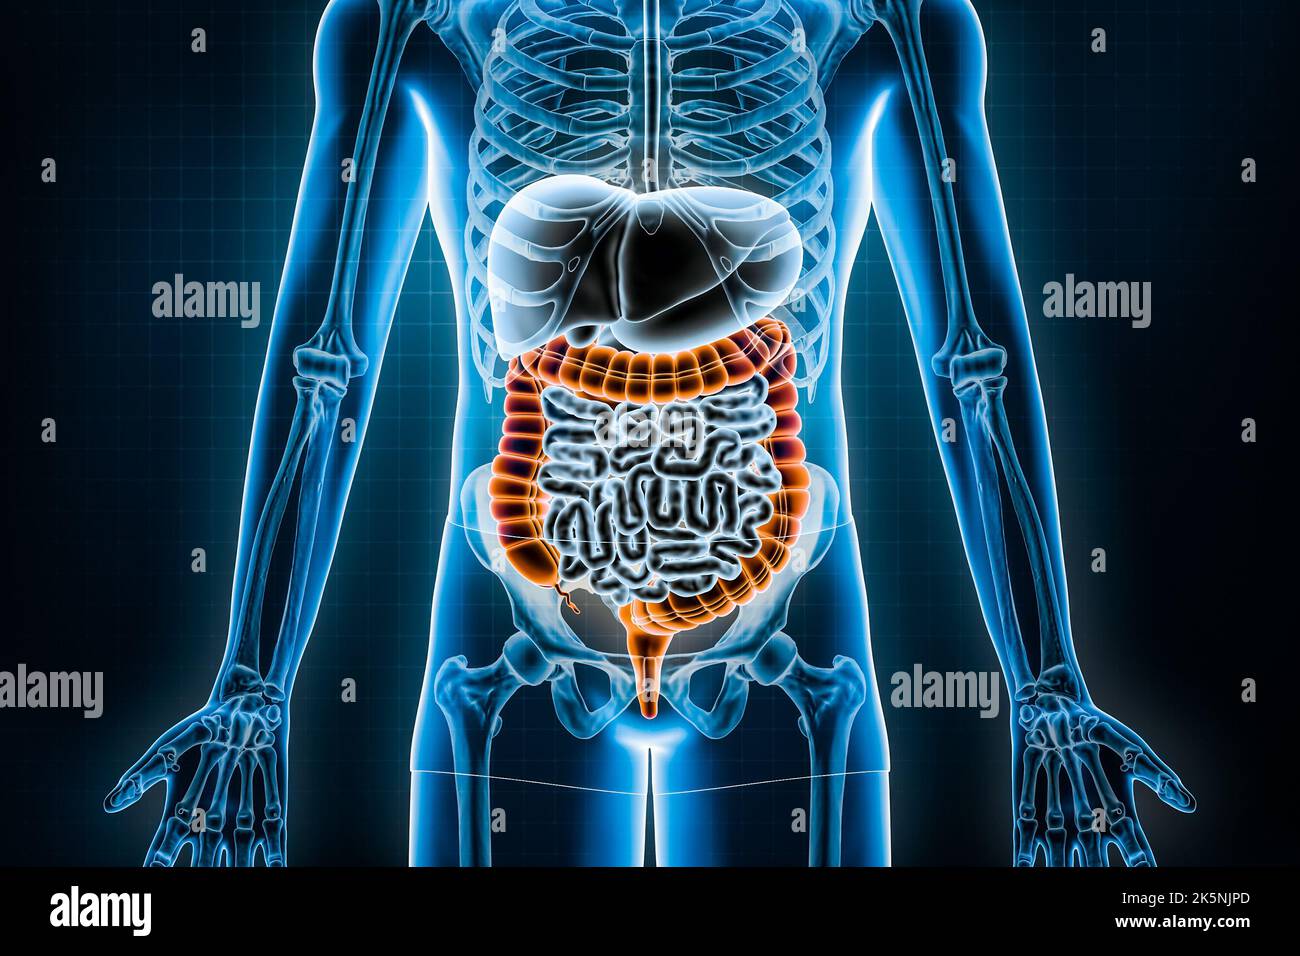 Dickdarm 3D Rendering Illustration. Vordere oder vordere Ansicht des menschlichen Verdauungssystems und des Magen-Darm-Trakts oder des Darms. Anatomie, medizinisch Stockfoto